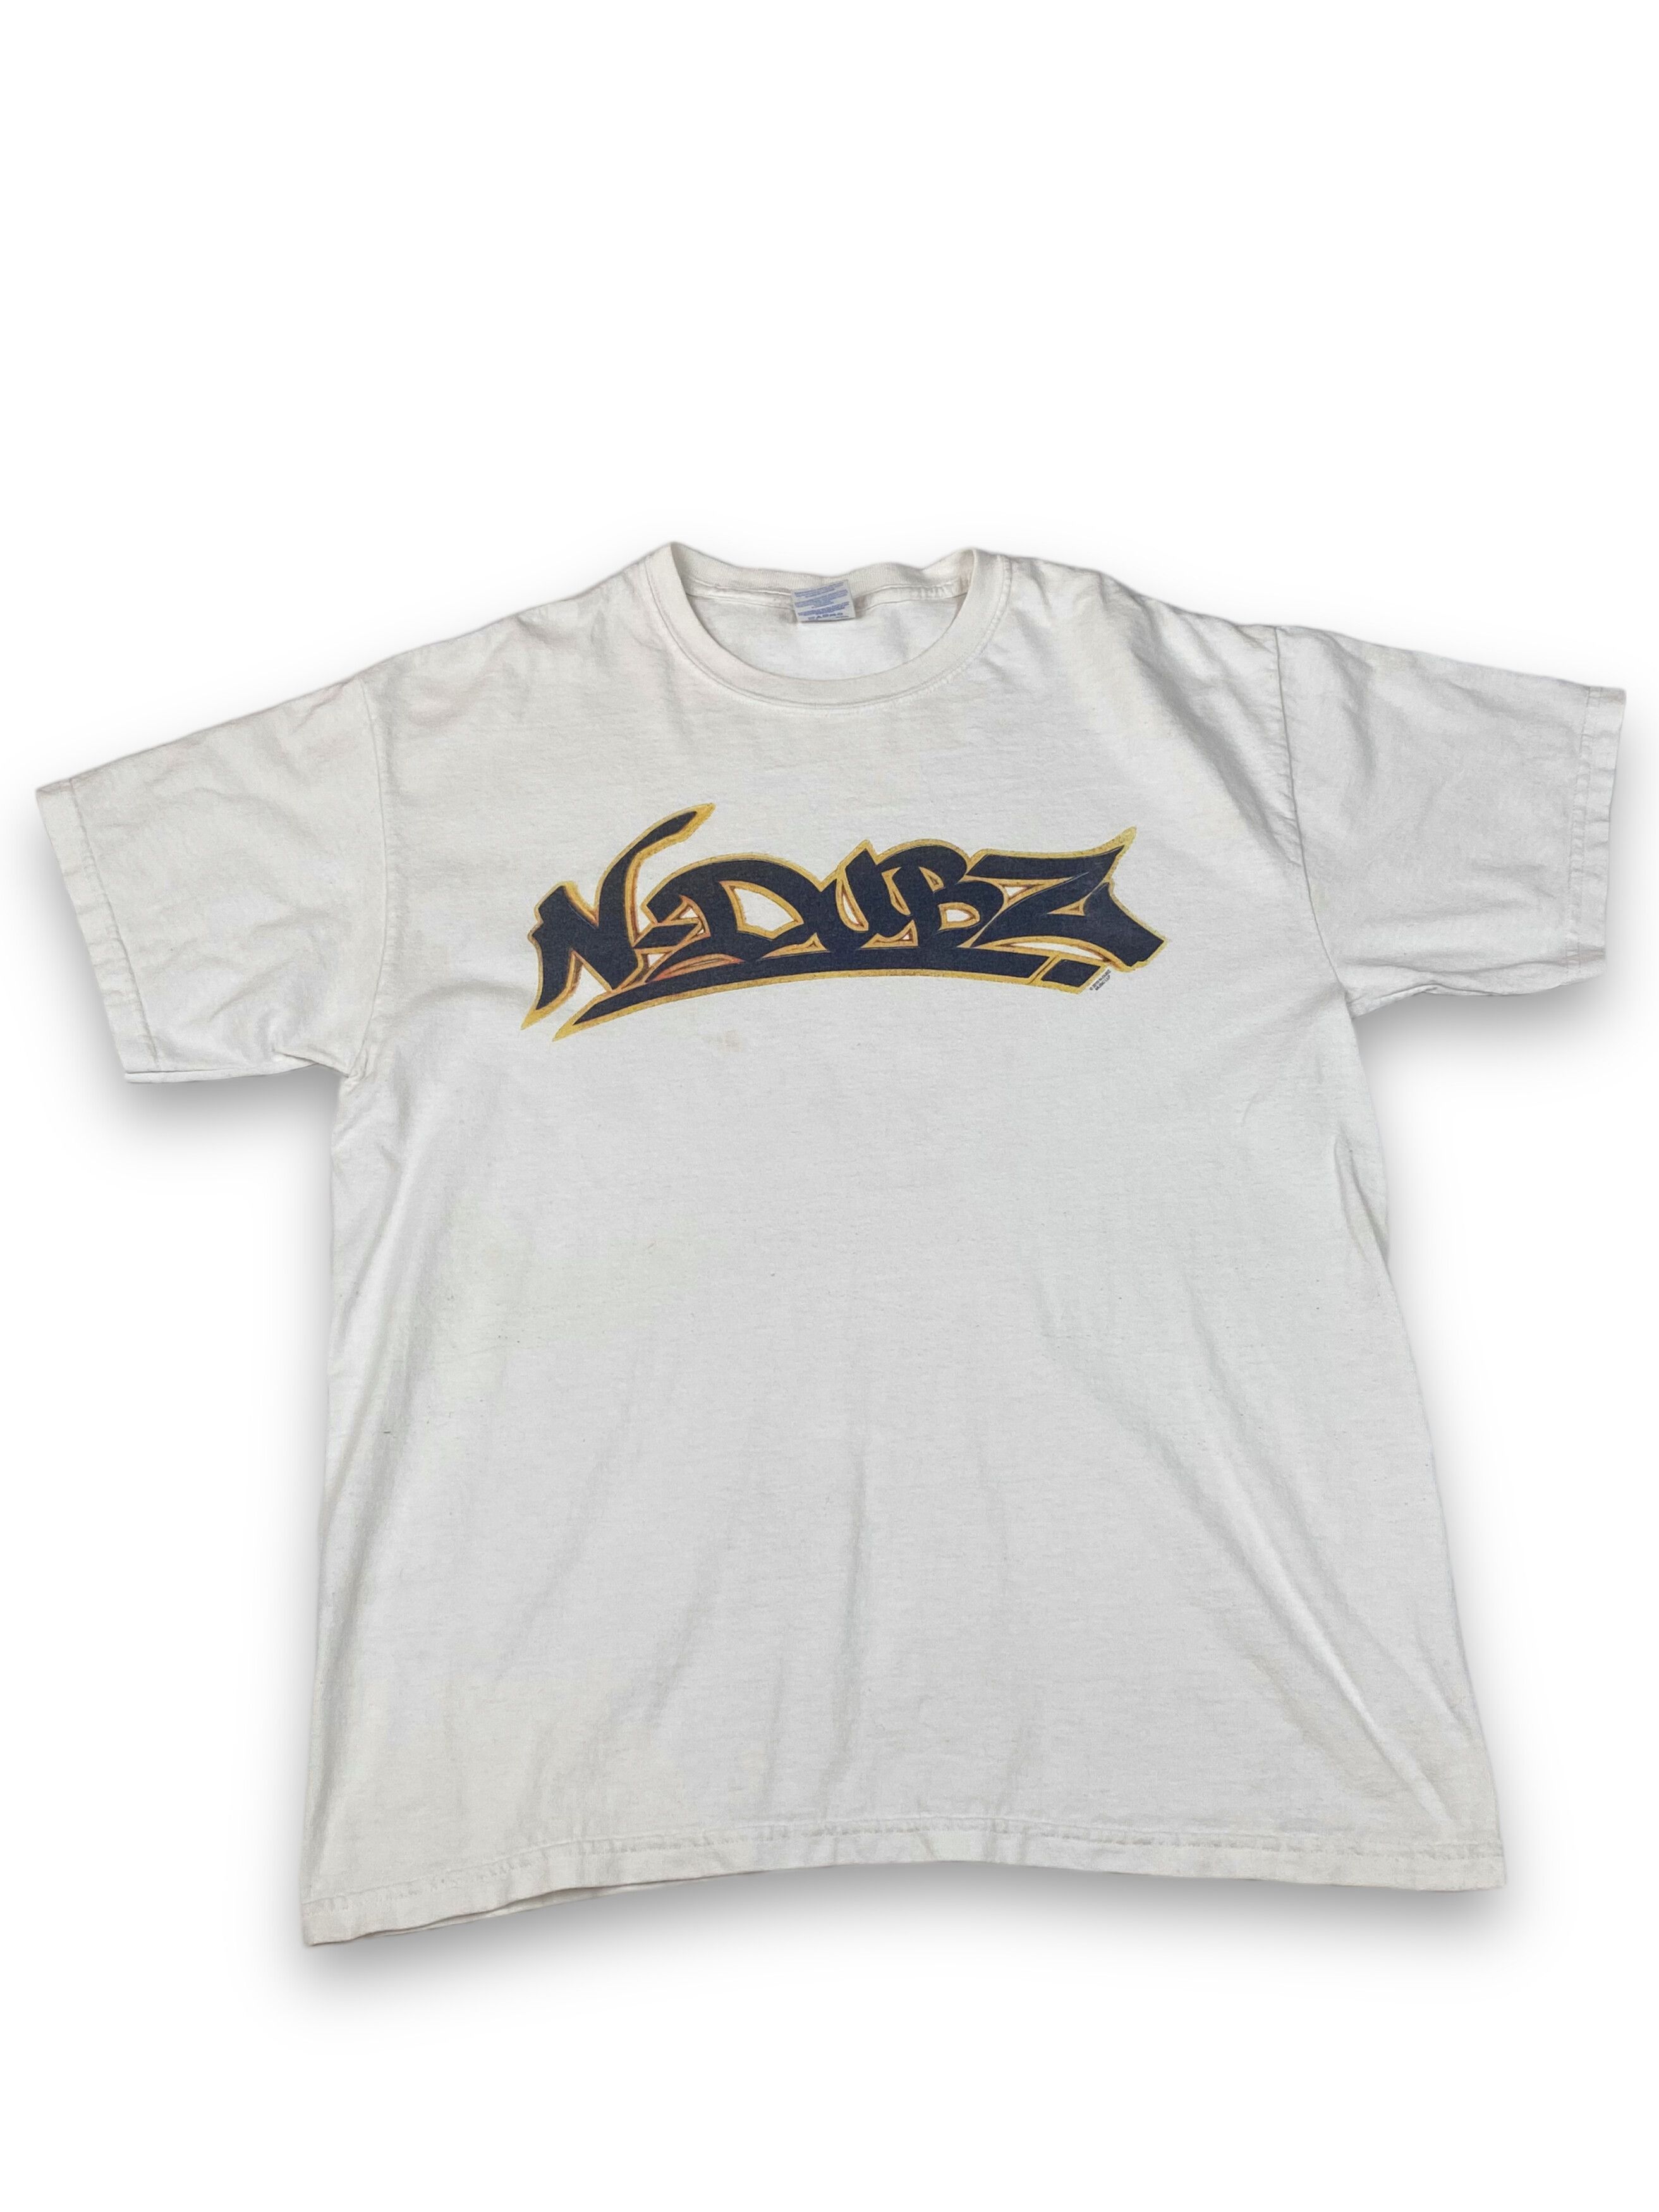 Pre-owned Band Tees Vintage N - Dubz 2010 Graffiti Big Logo White T-shirt M674